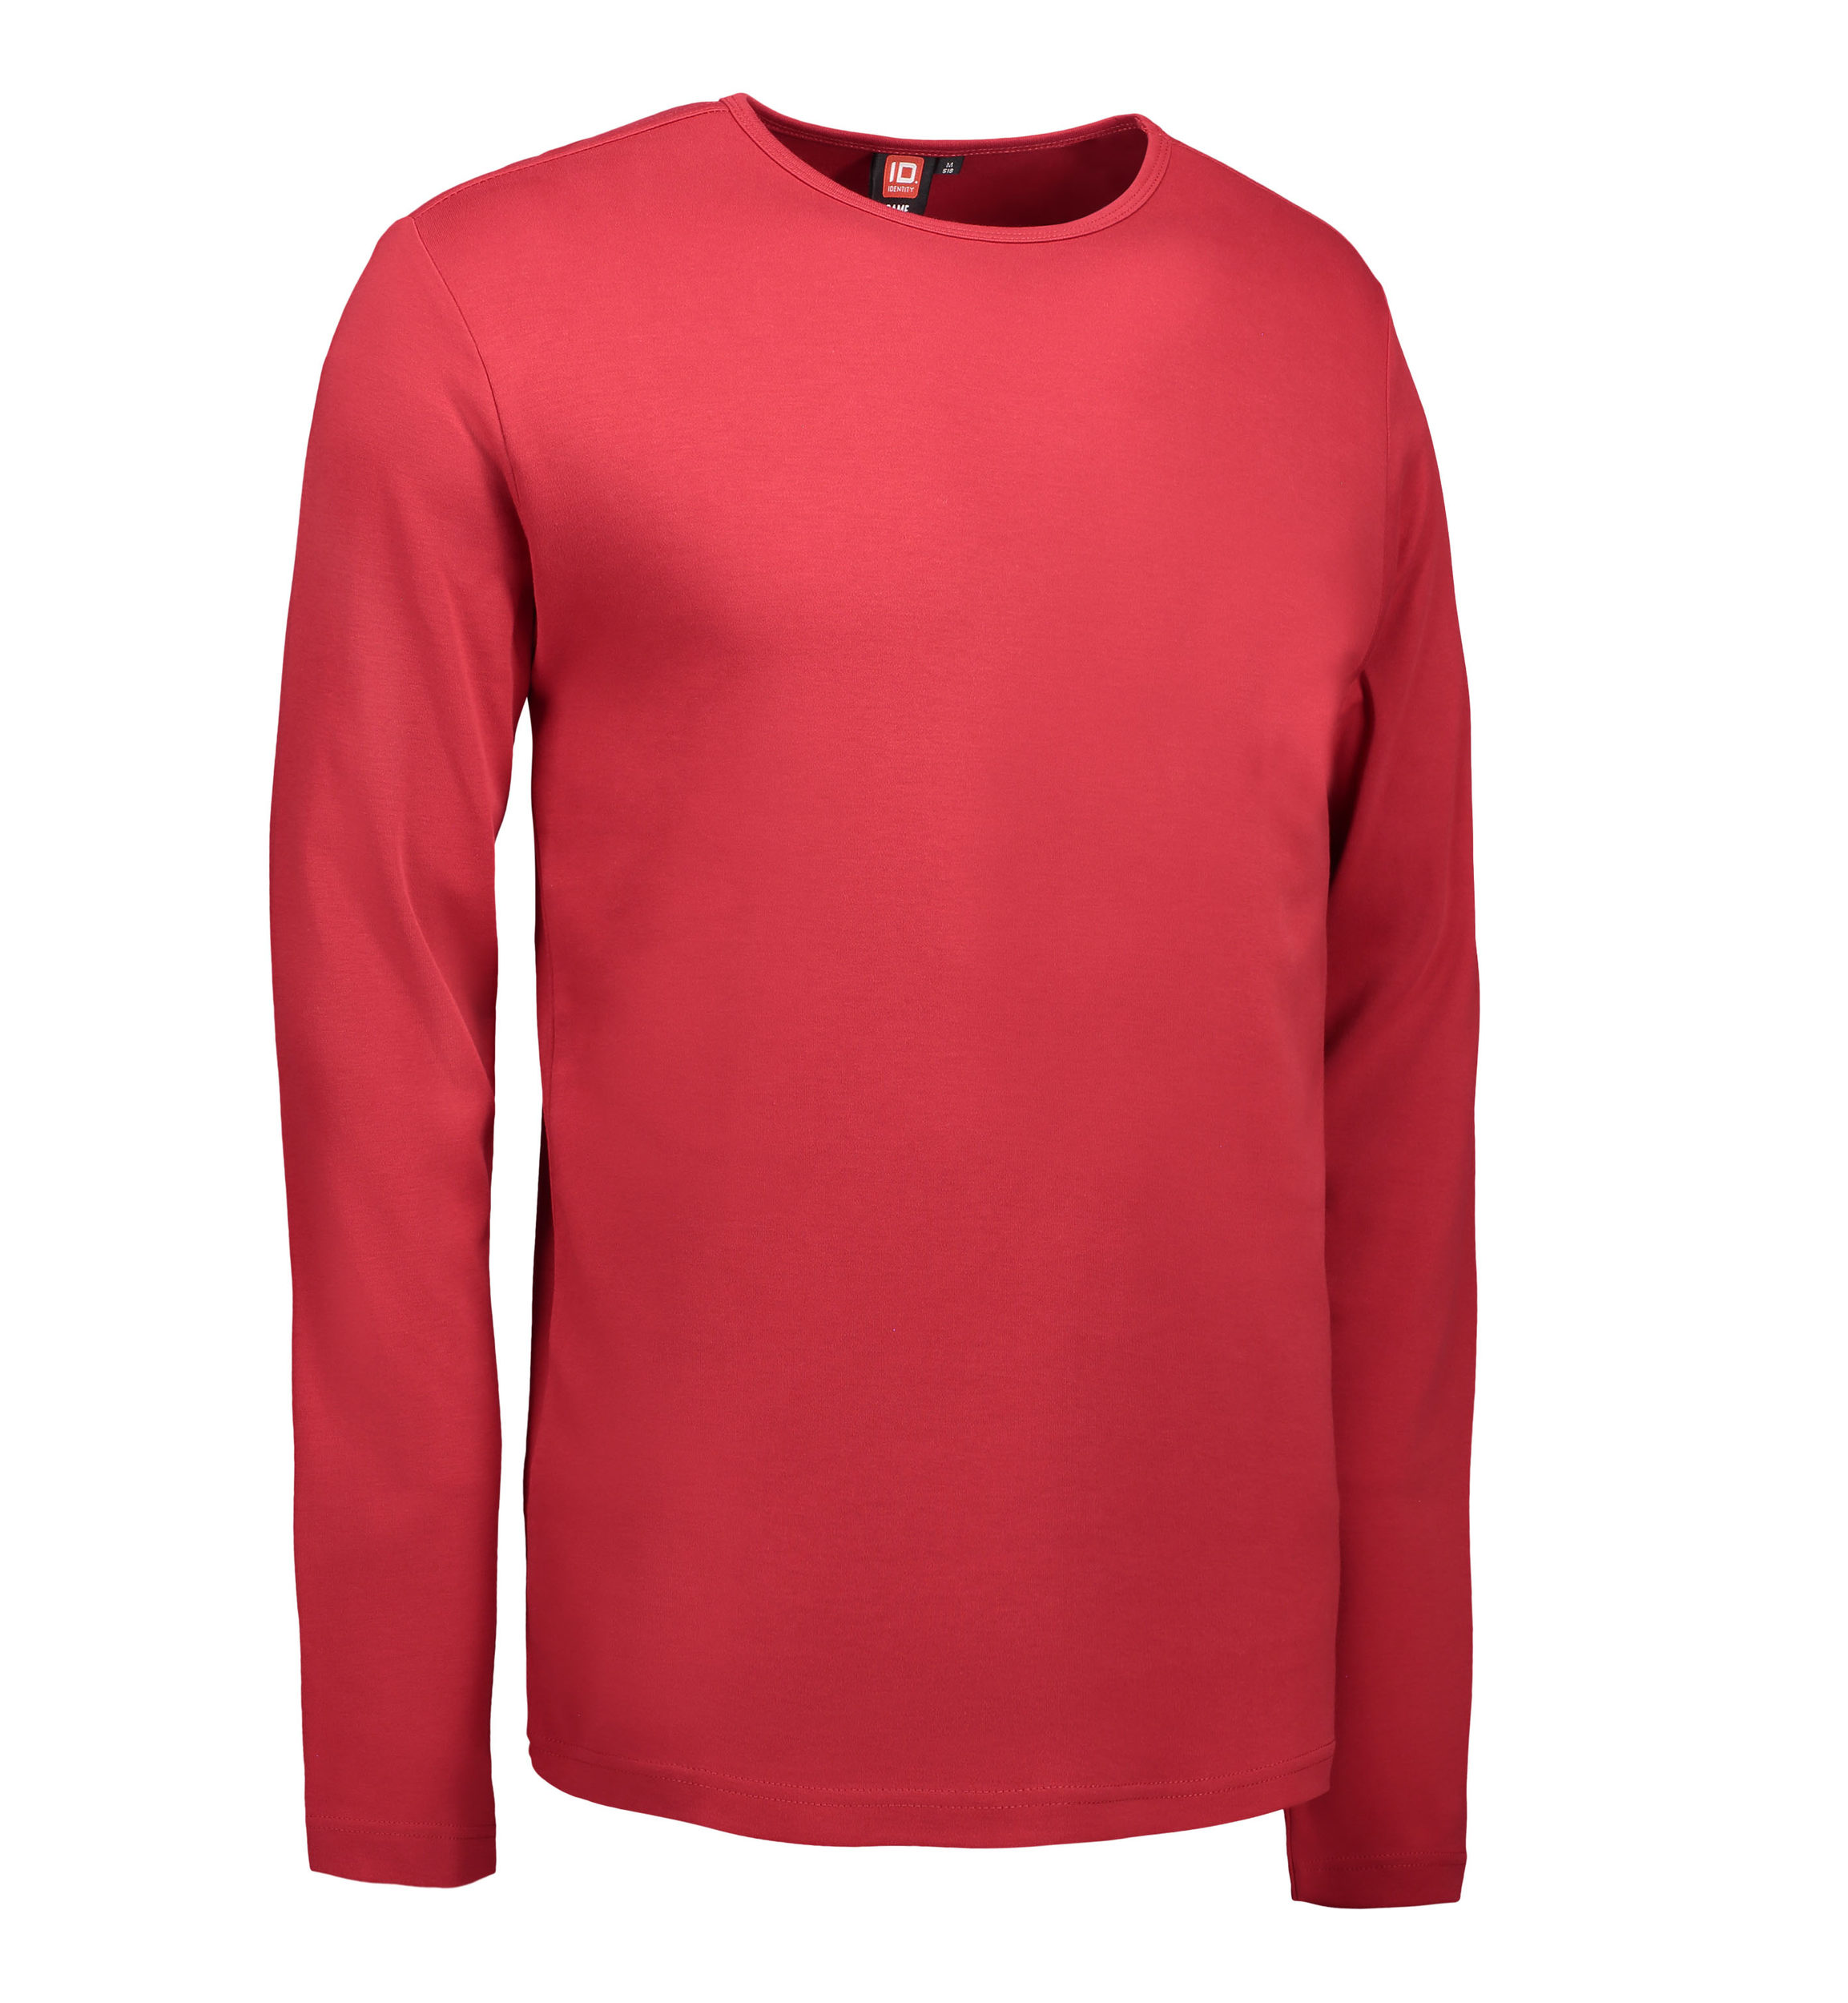 Billede af Rød langærmet t-shirt til mænd - 3XL hos Sygeplejebutikken.dk